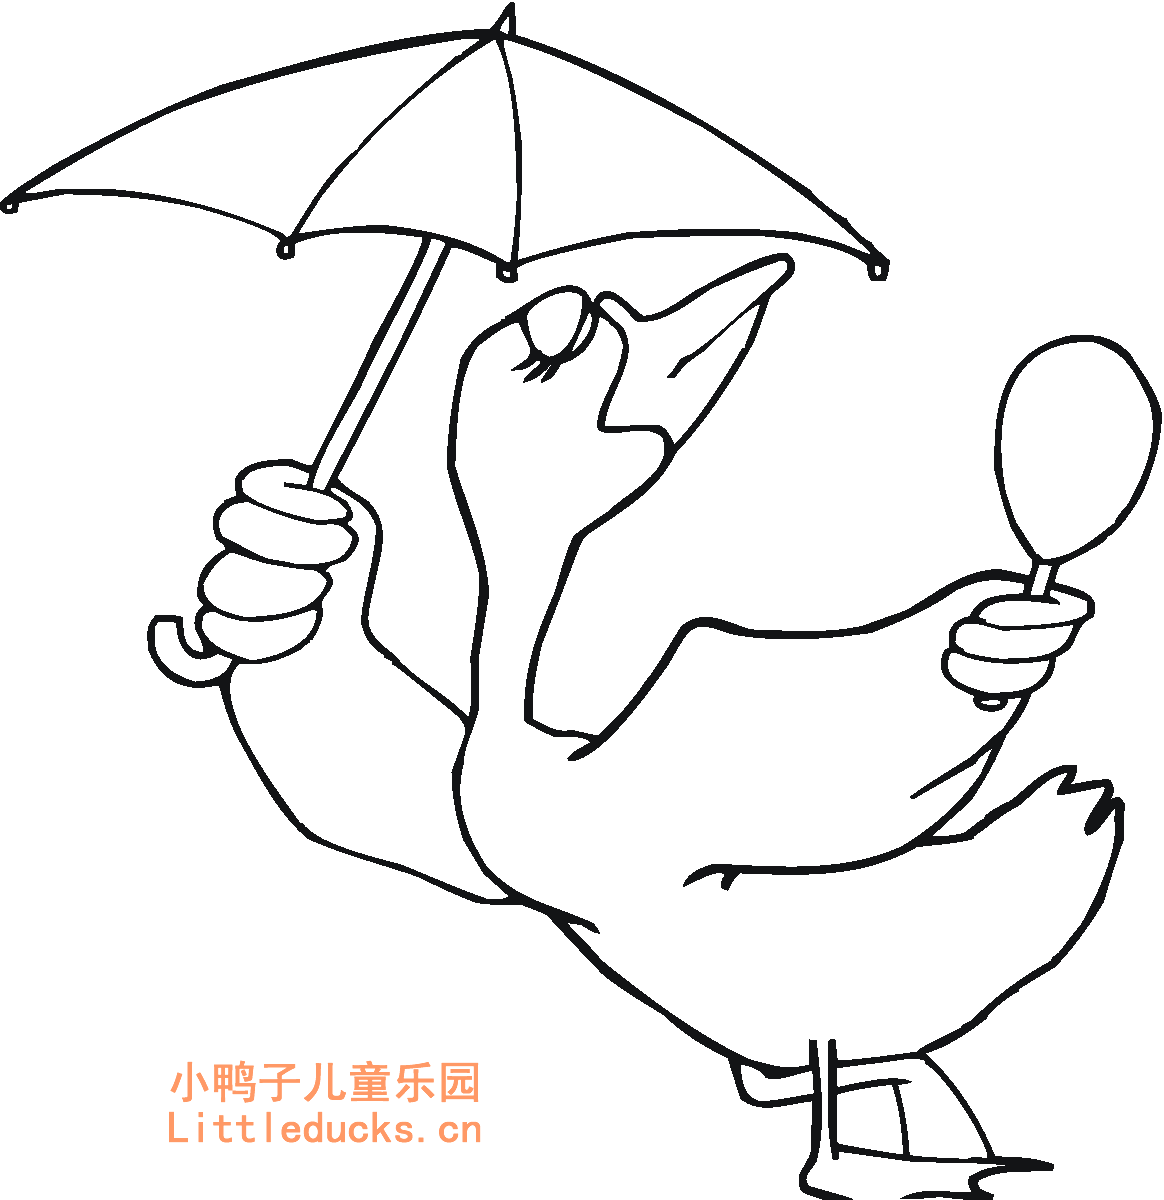 打伞的小鸭子简笔画图片